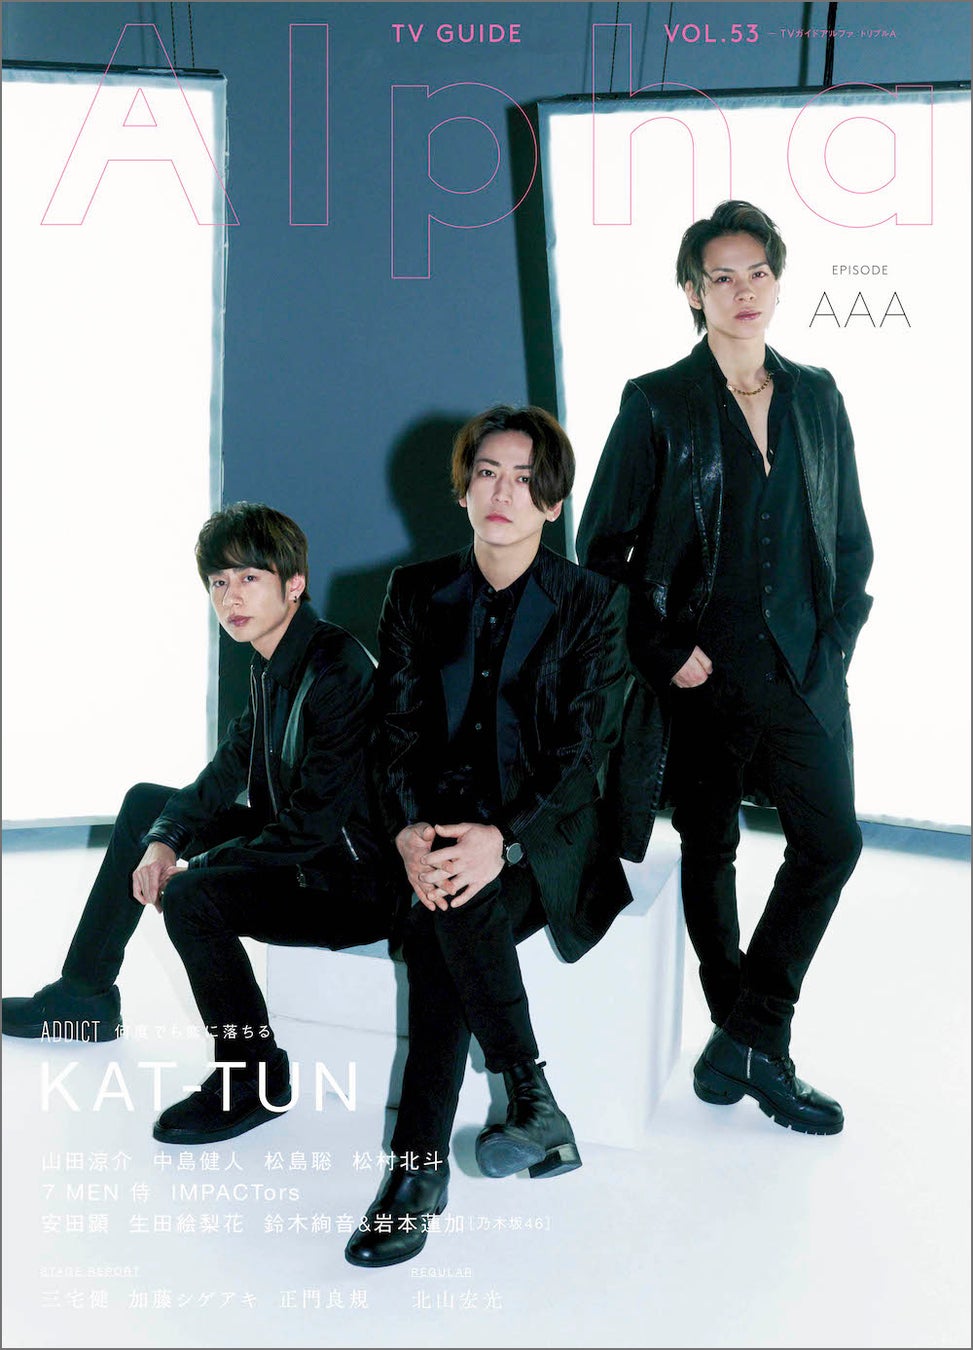 KAT-TUNがデビュー日に表紙を飾る「TVガイドAlpha EPISODE AAA」本日発売！ “音楽”をテーマに楽曲作りやライブ制作の舞台裏に迫るインタビューも